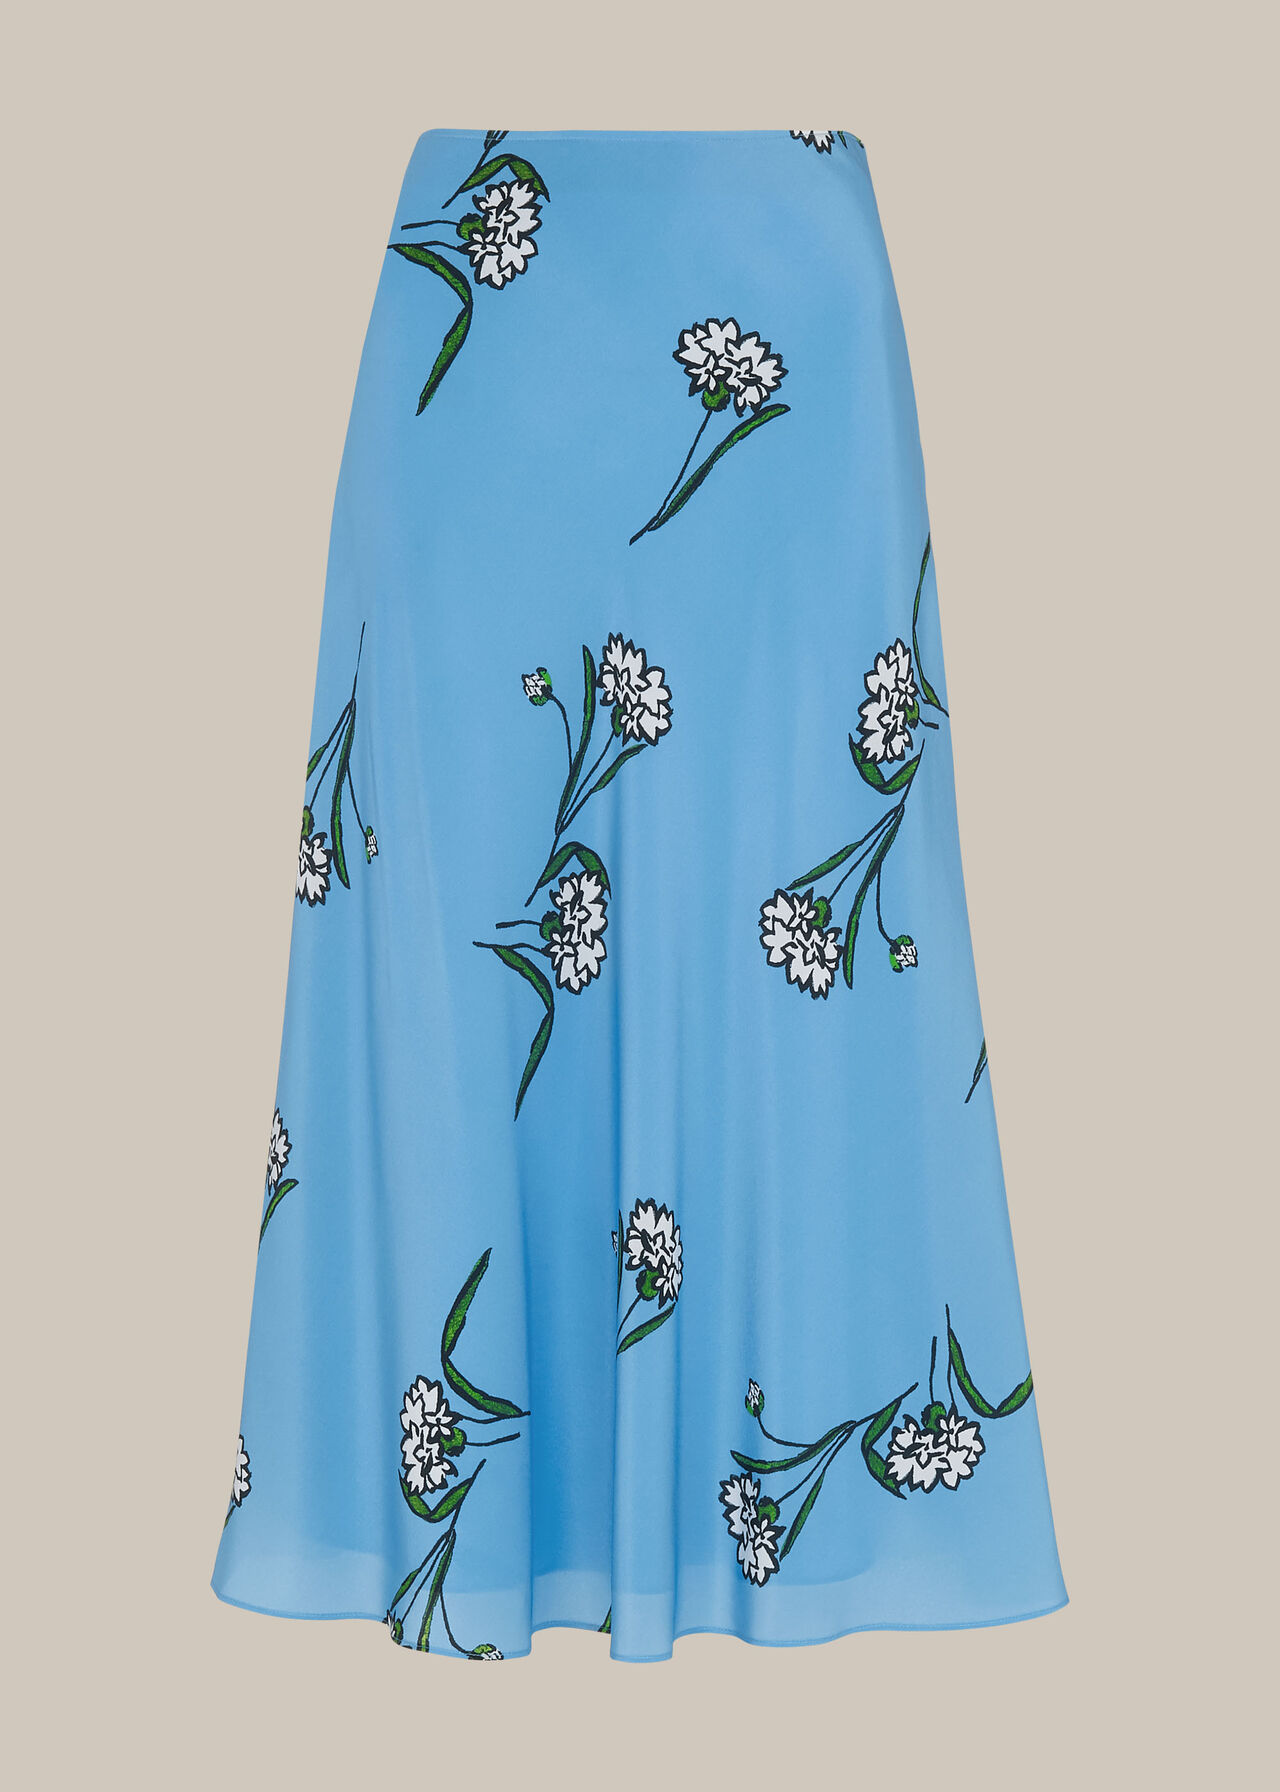 Sprig Floral Silk Bias Skirt Blue/Multi